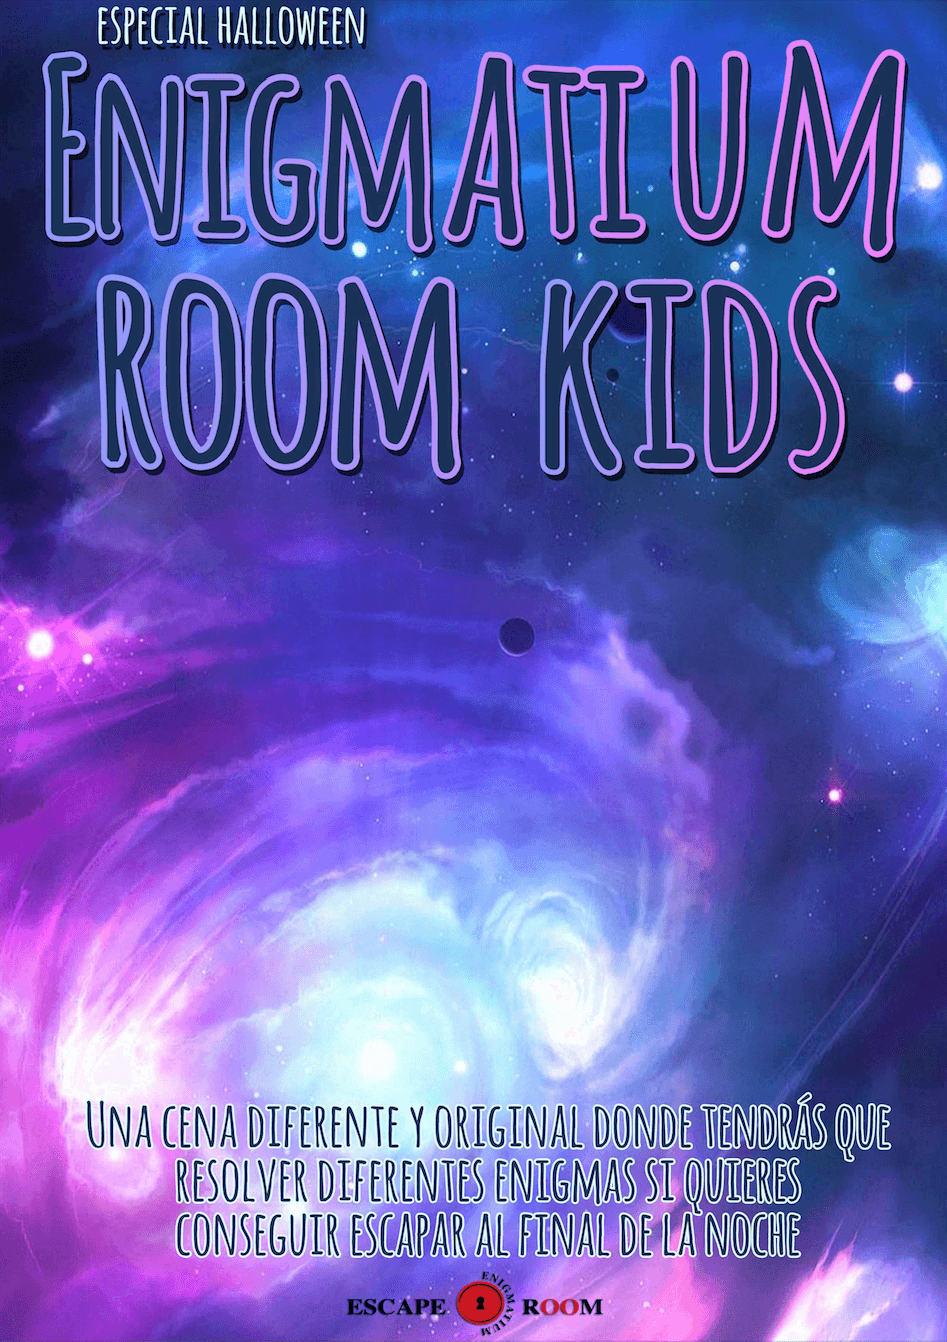 Enigmatium Room Kids